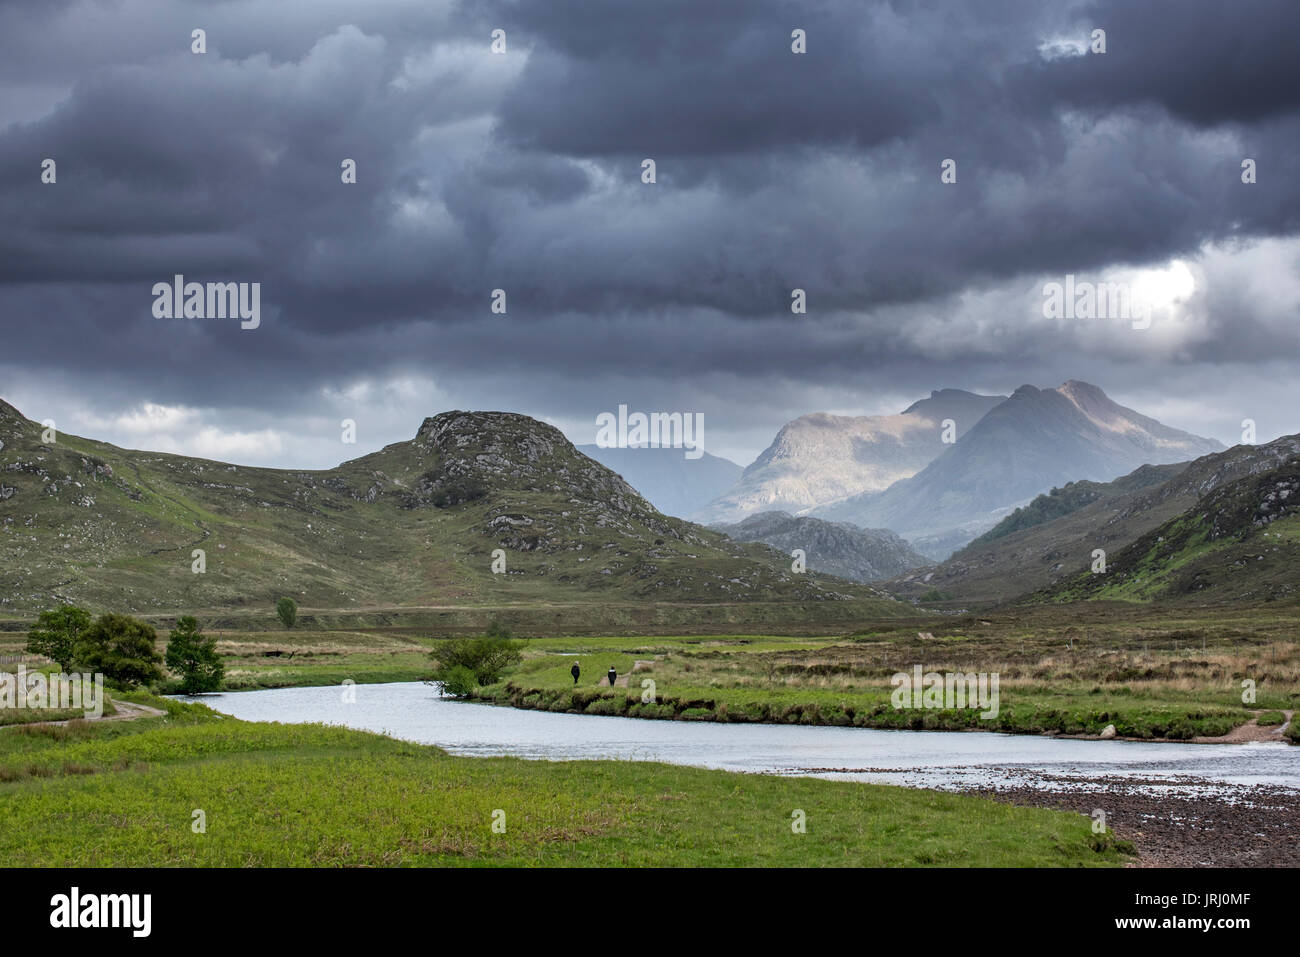 Deux promeneurs marchant sur le chemin le long de la rivière et de la pluie les nuages qui se forment dans les Highlands écossais, Wester Ross, Scotland, UK Banque D'Images